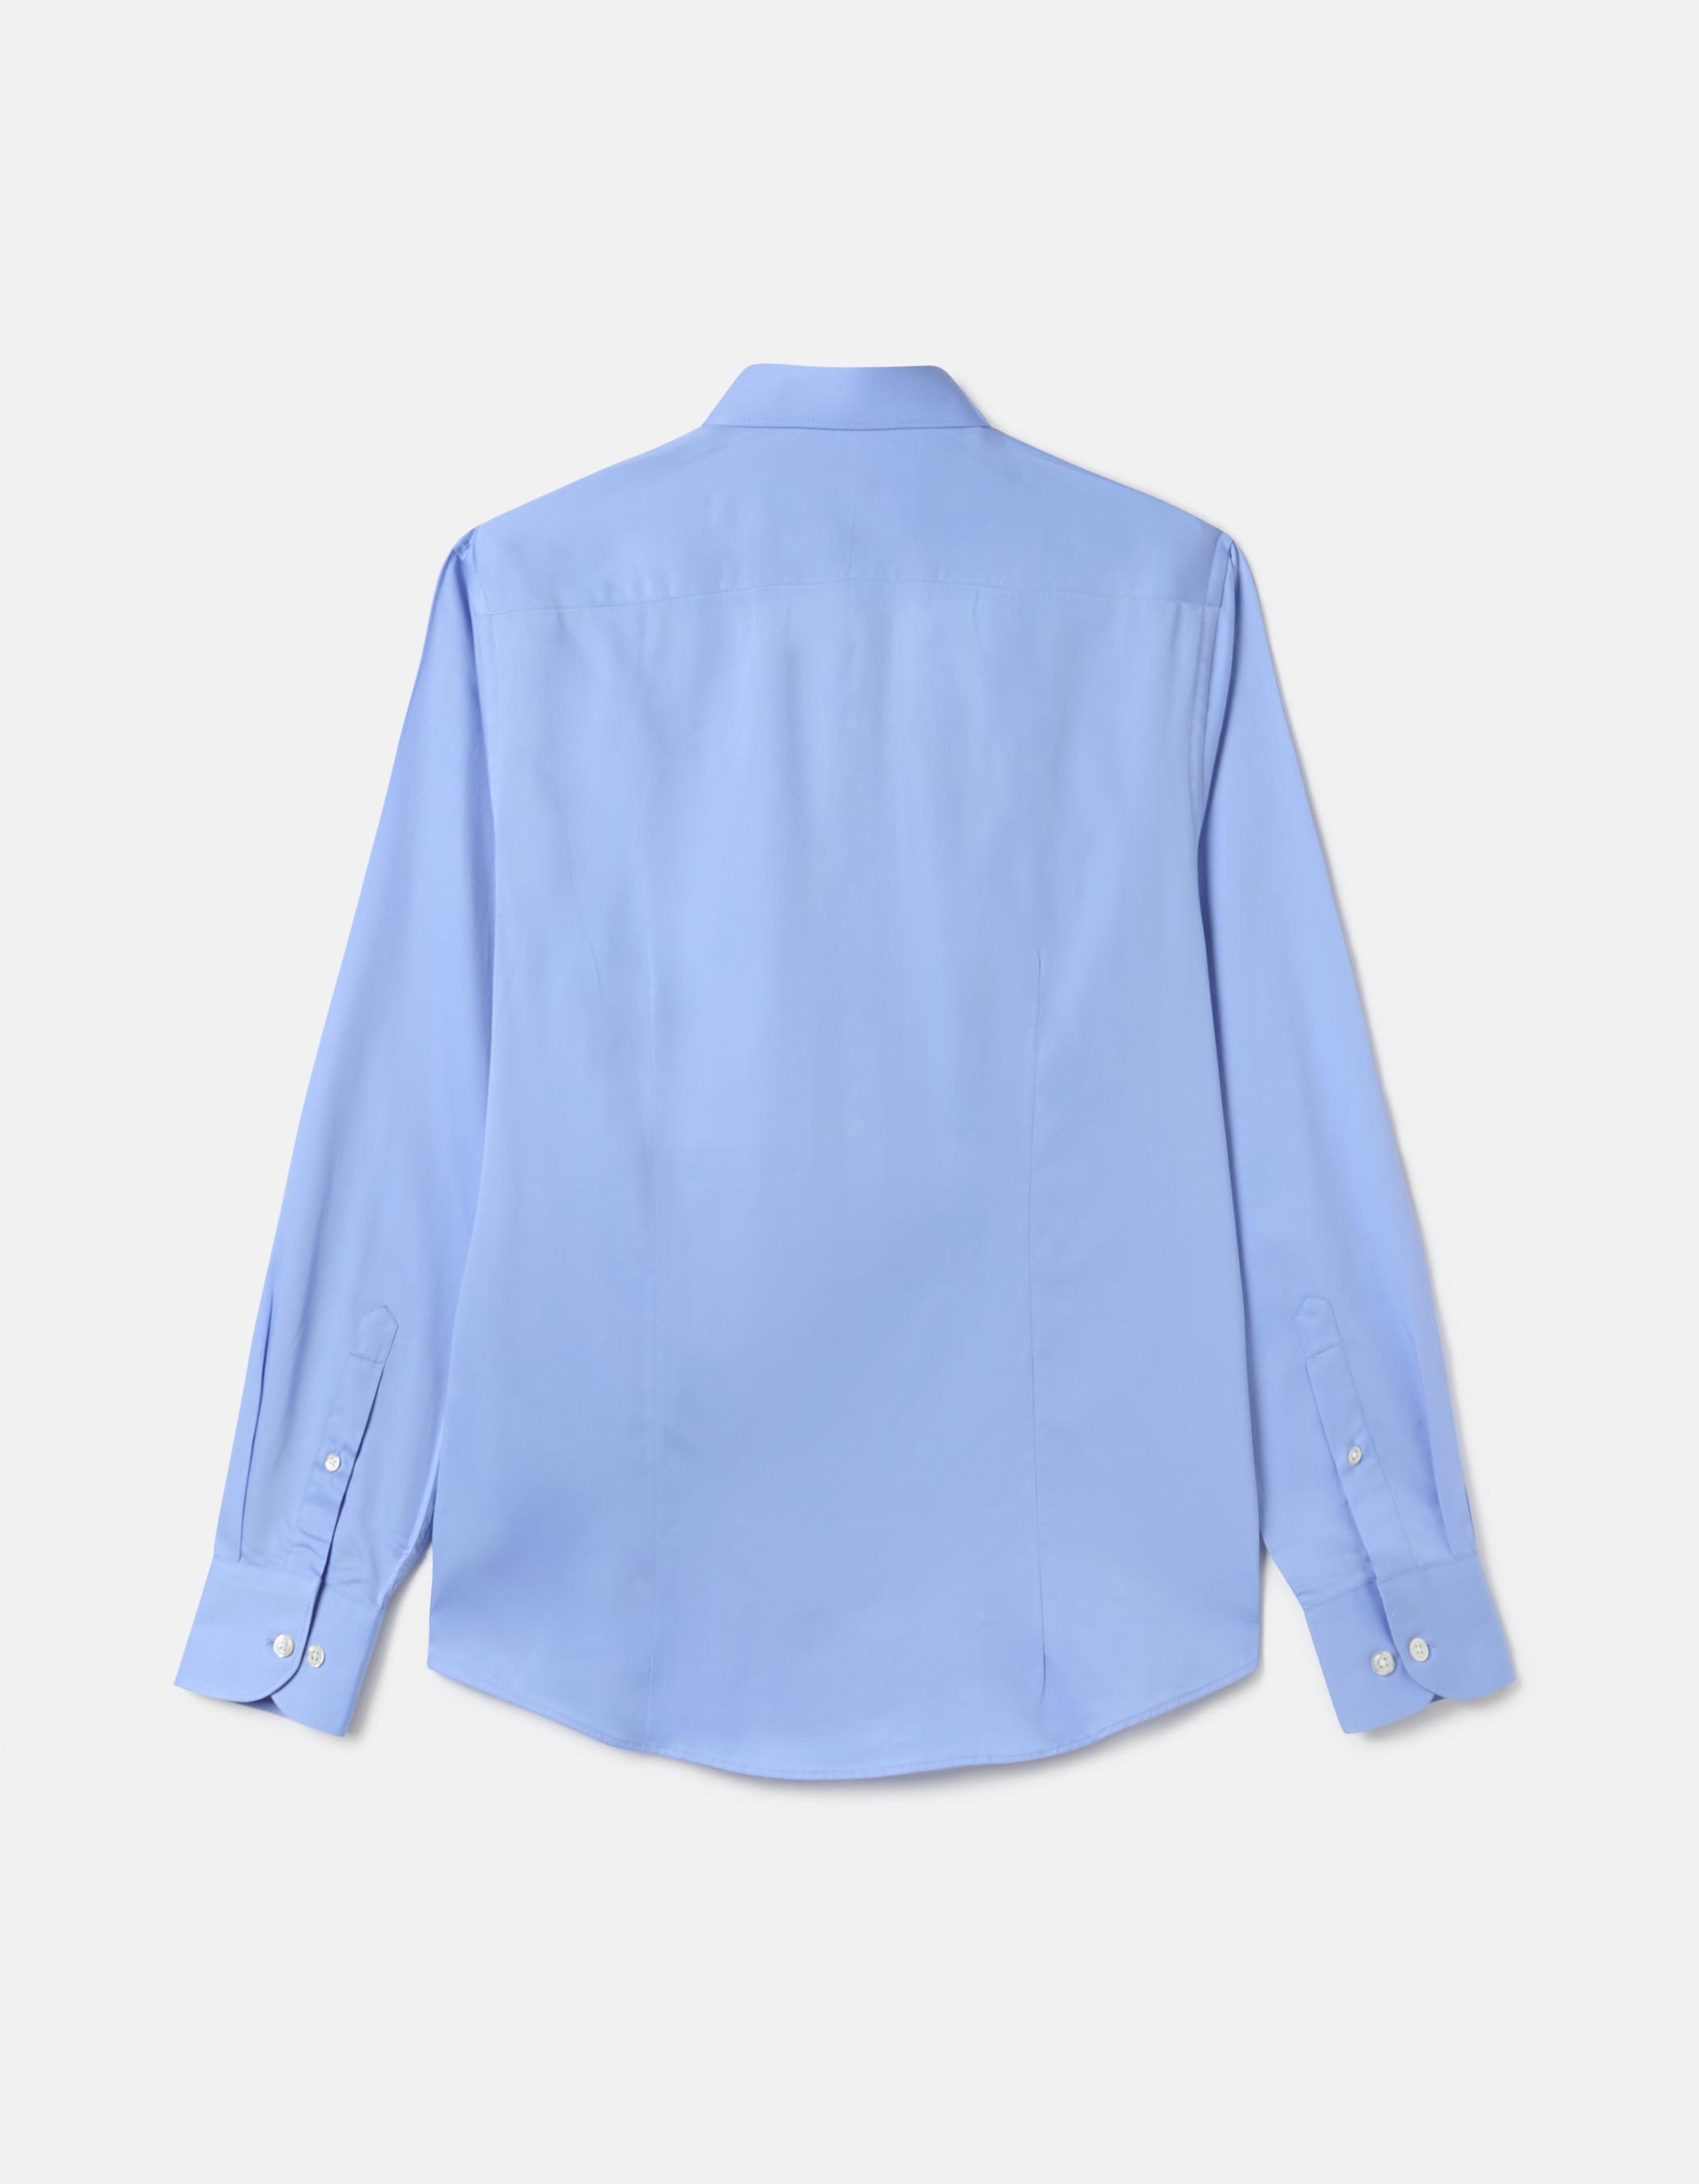 Plain blue shirt 2